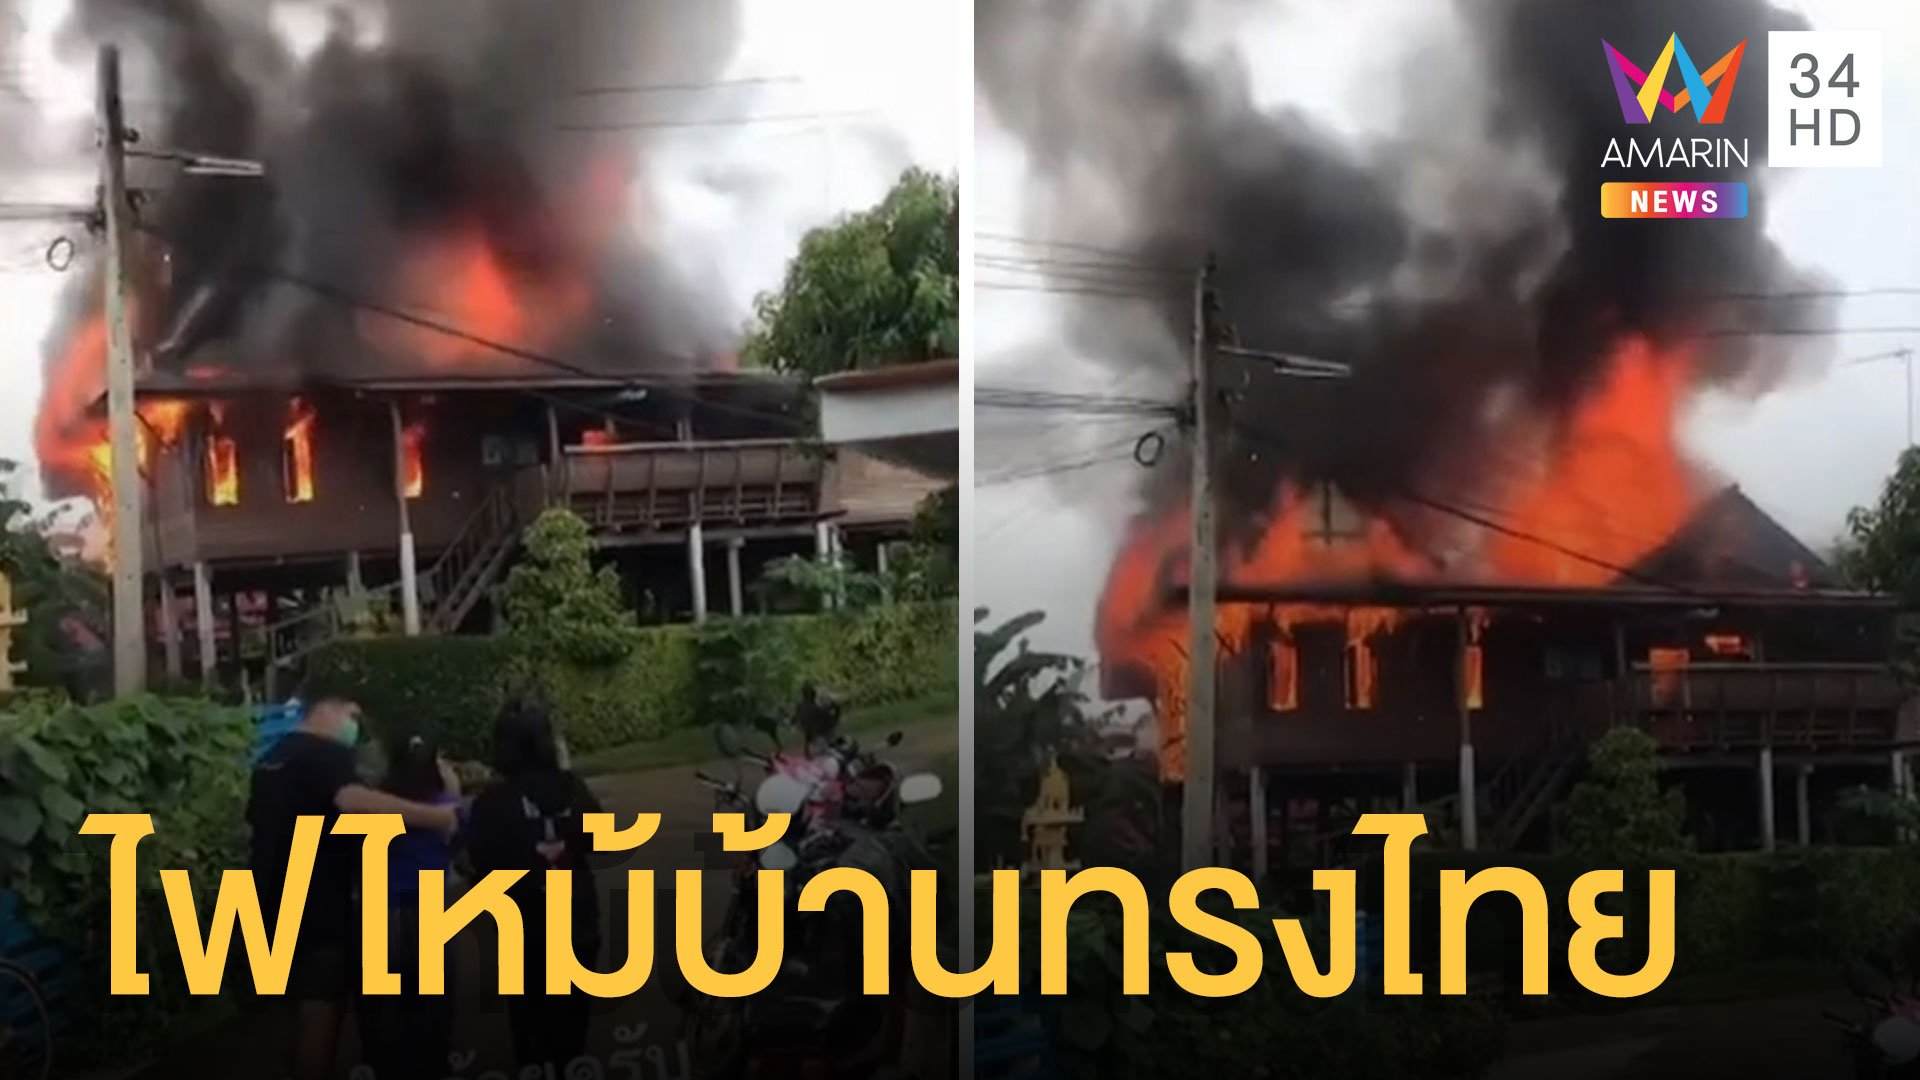 บ้านทรงไทยโบราณไฟไหม้วอดทั้งหลัง เจ้าของใจสลาย | ข่าวอรุณอมรินทร์ | 27 ก.ย. 64 | AMARIN TVHD34